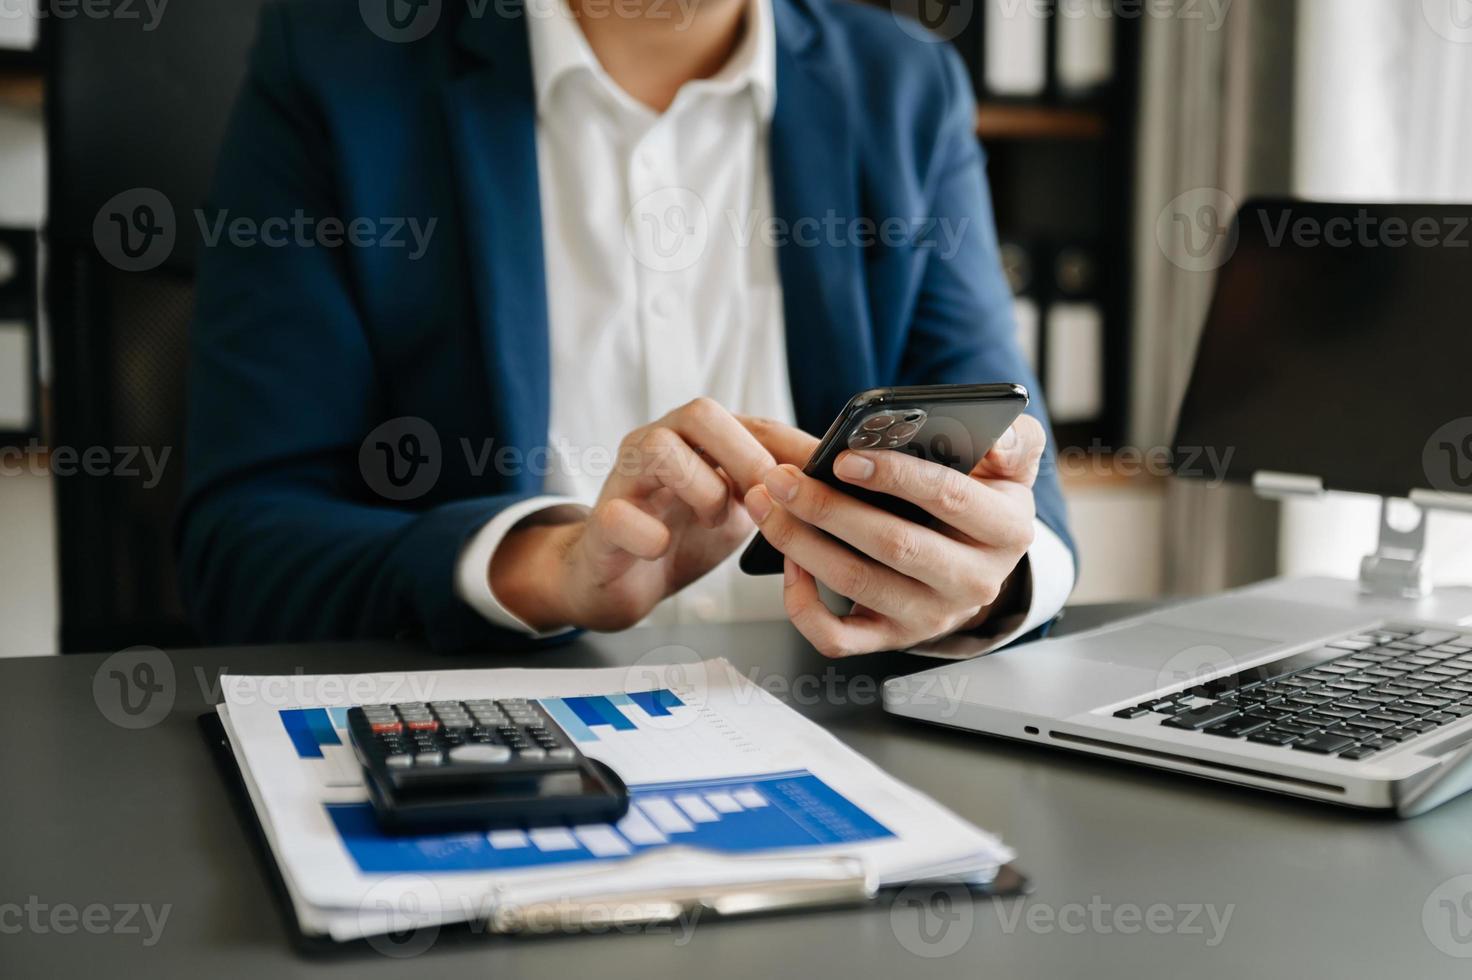 affärskvinna s händer skriver på smartphone och bärbar dator tangentbord i morgon- ljus dator, skriver, uppkopplad i kontor foto